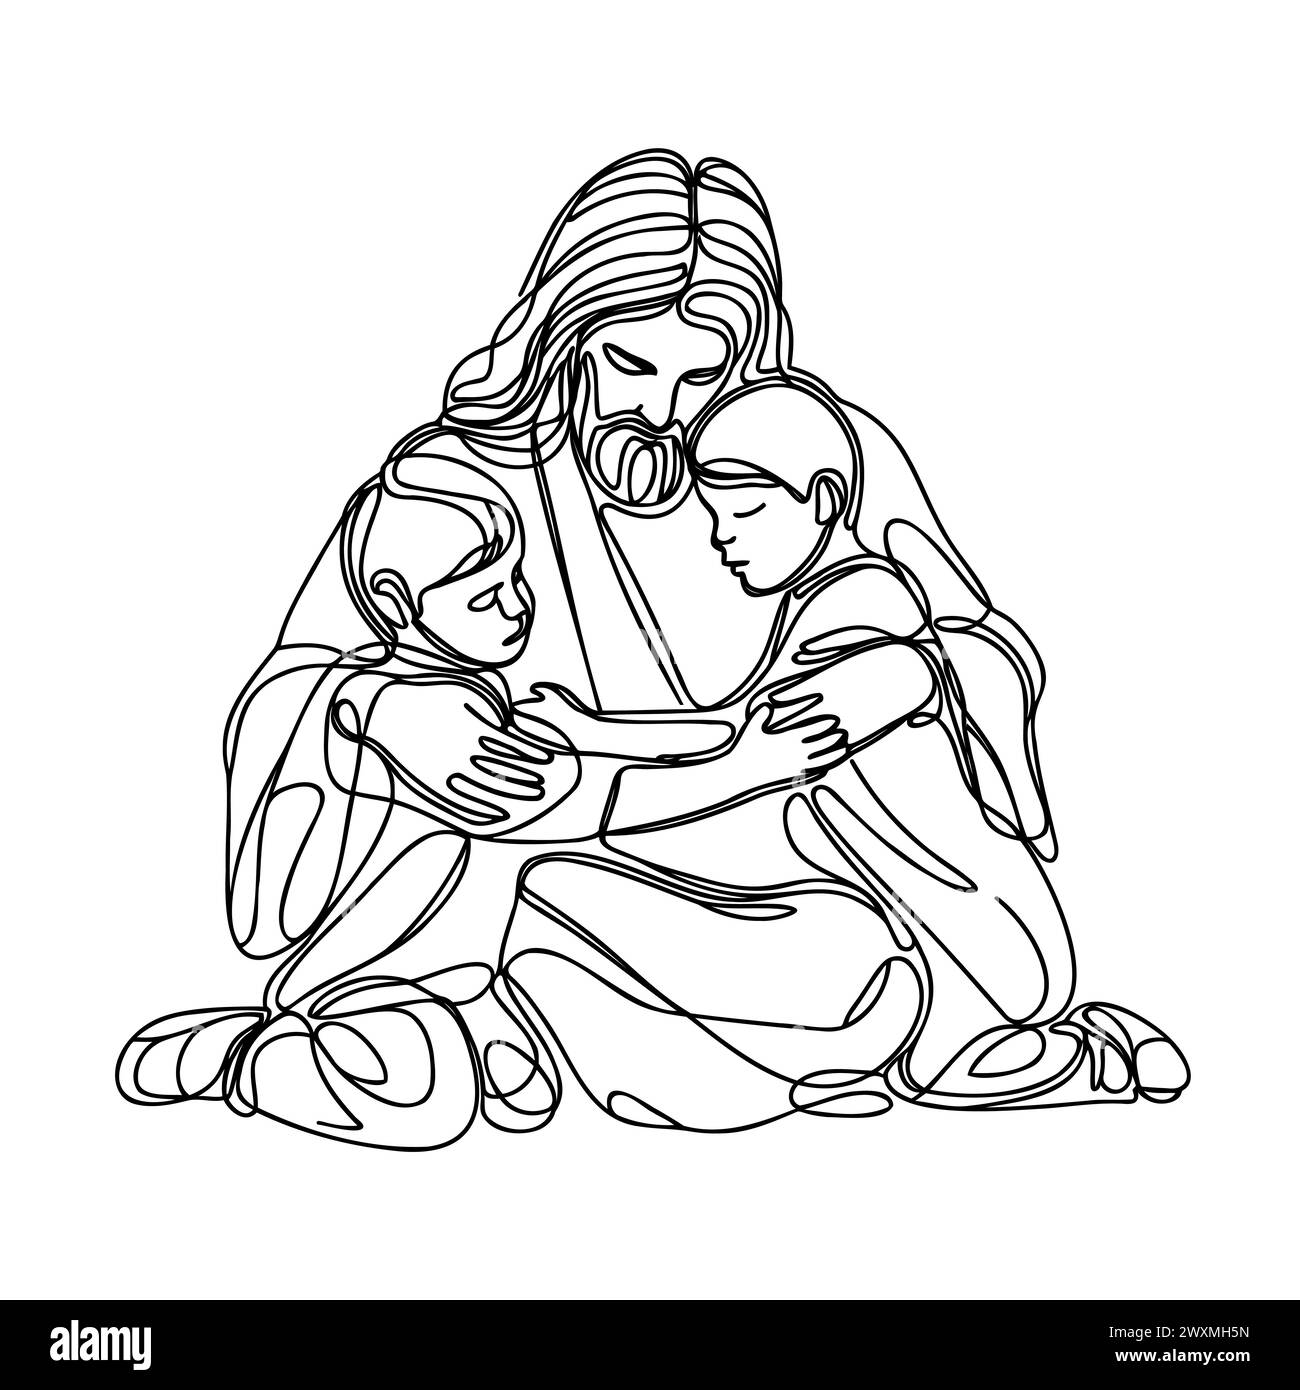 Dessin continu d'une ligne de Jésus Christ serrant un enfant. Illustration vectorielle. Illustration de Vecteur